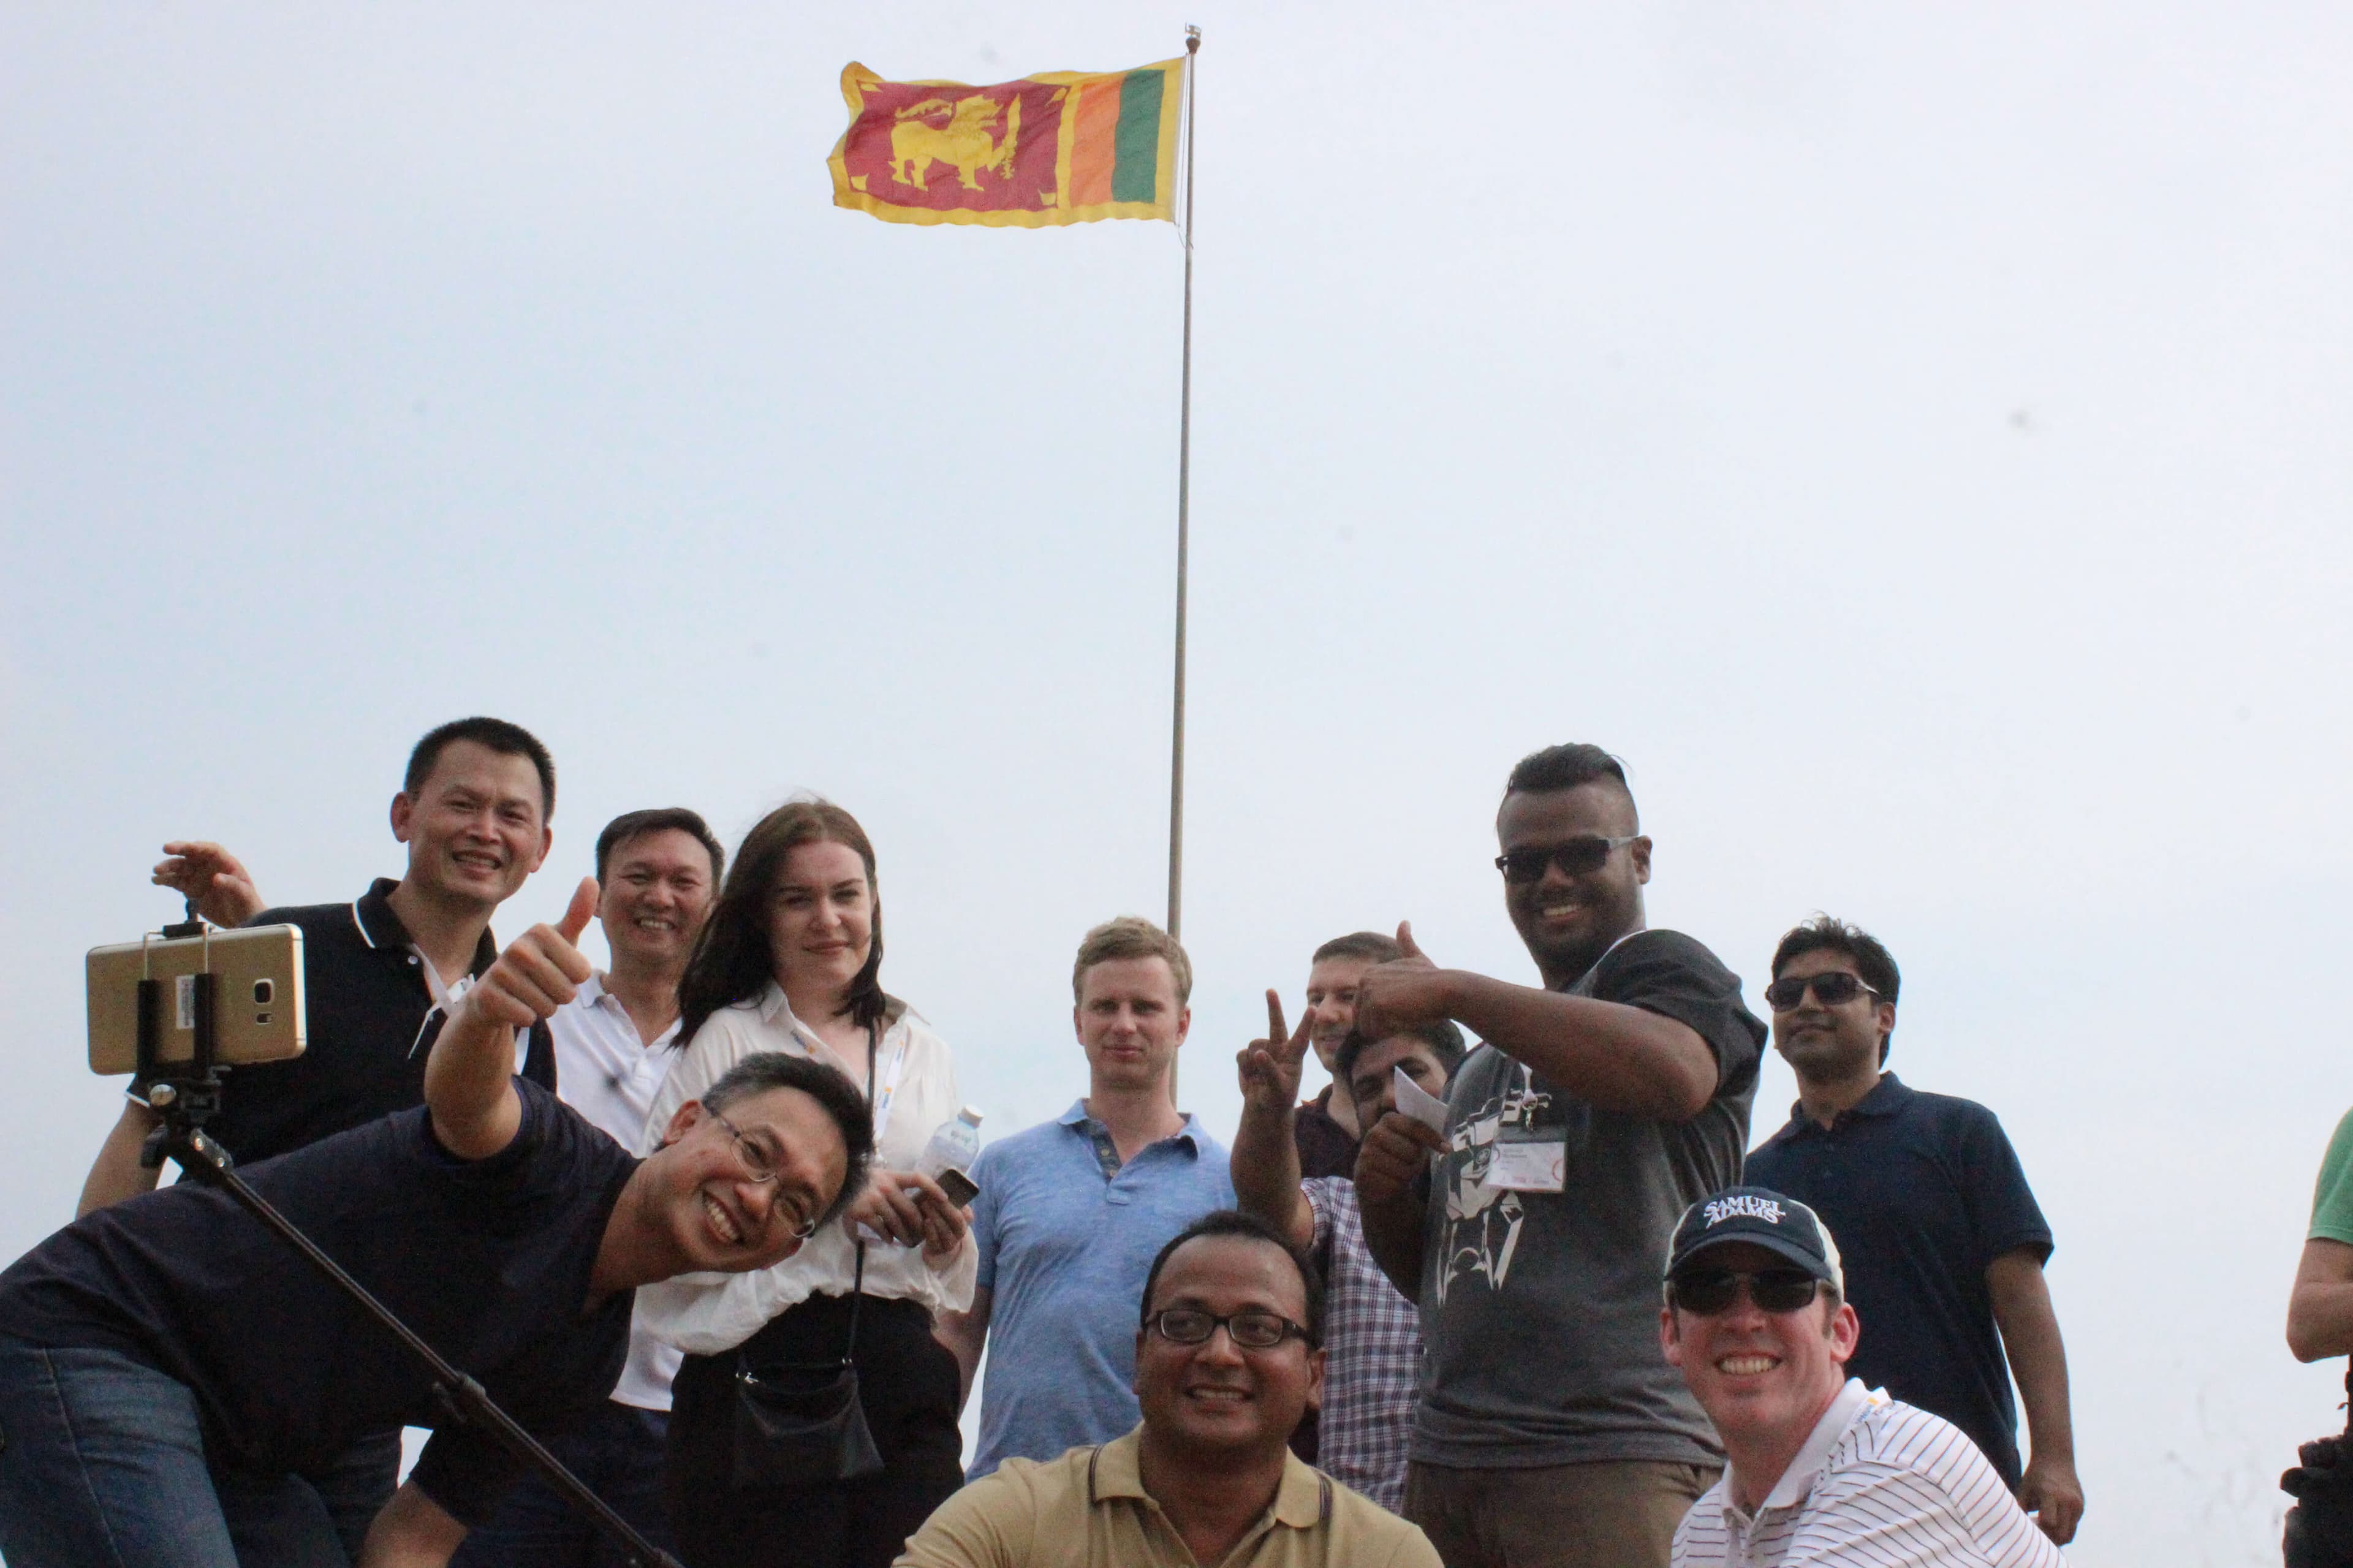 صورة جماعية للفريق مع العلم السريلانكي في الخلفية.